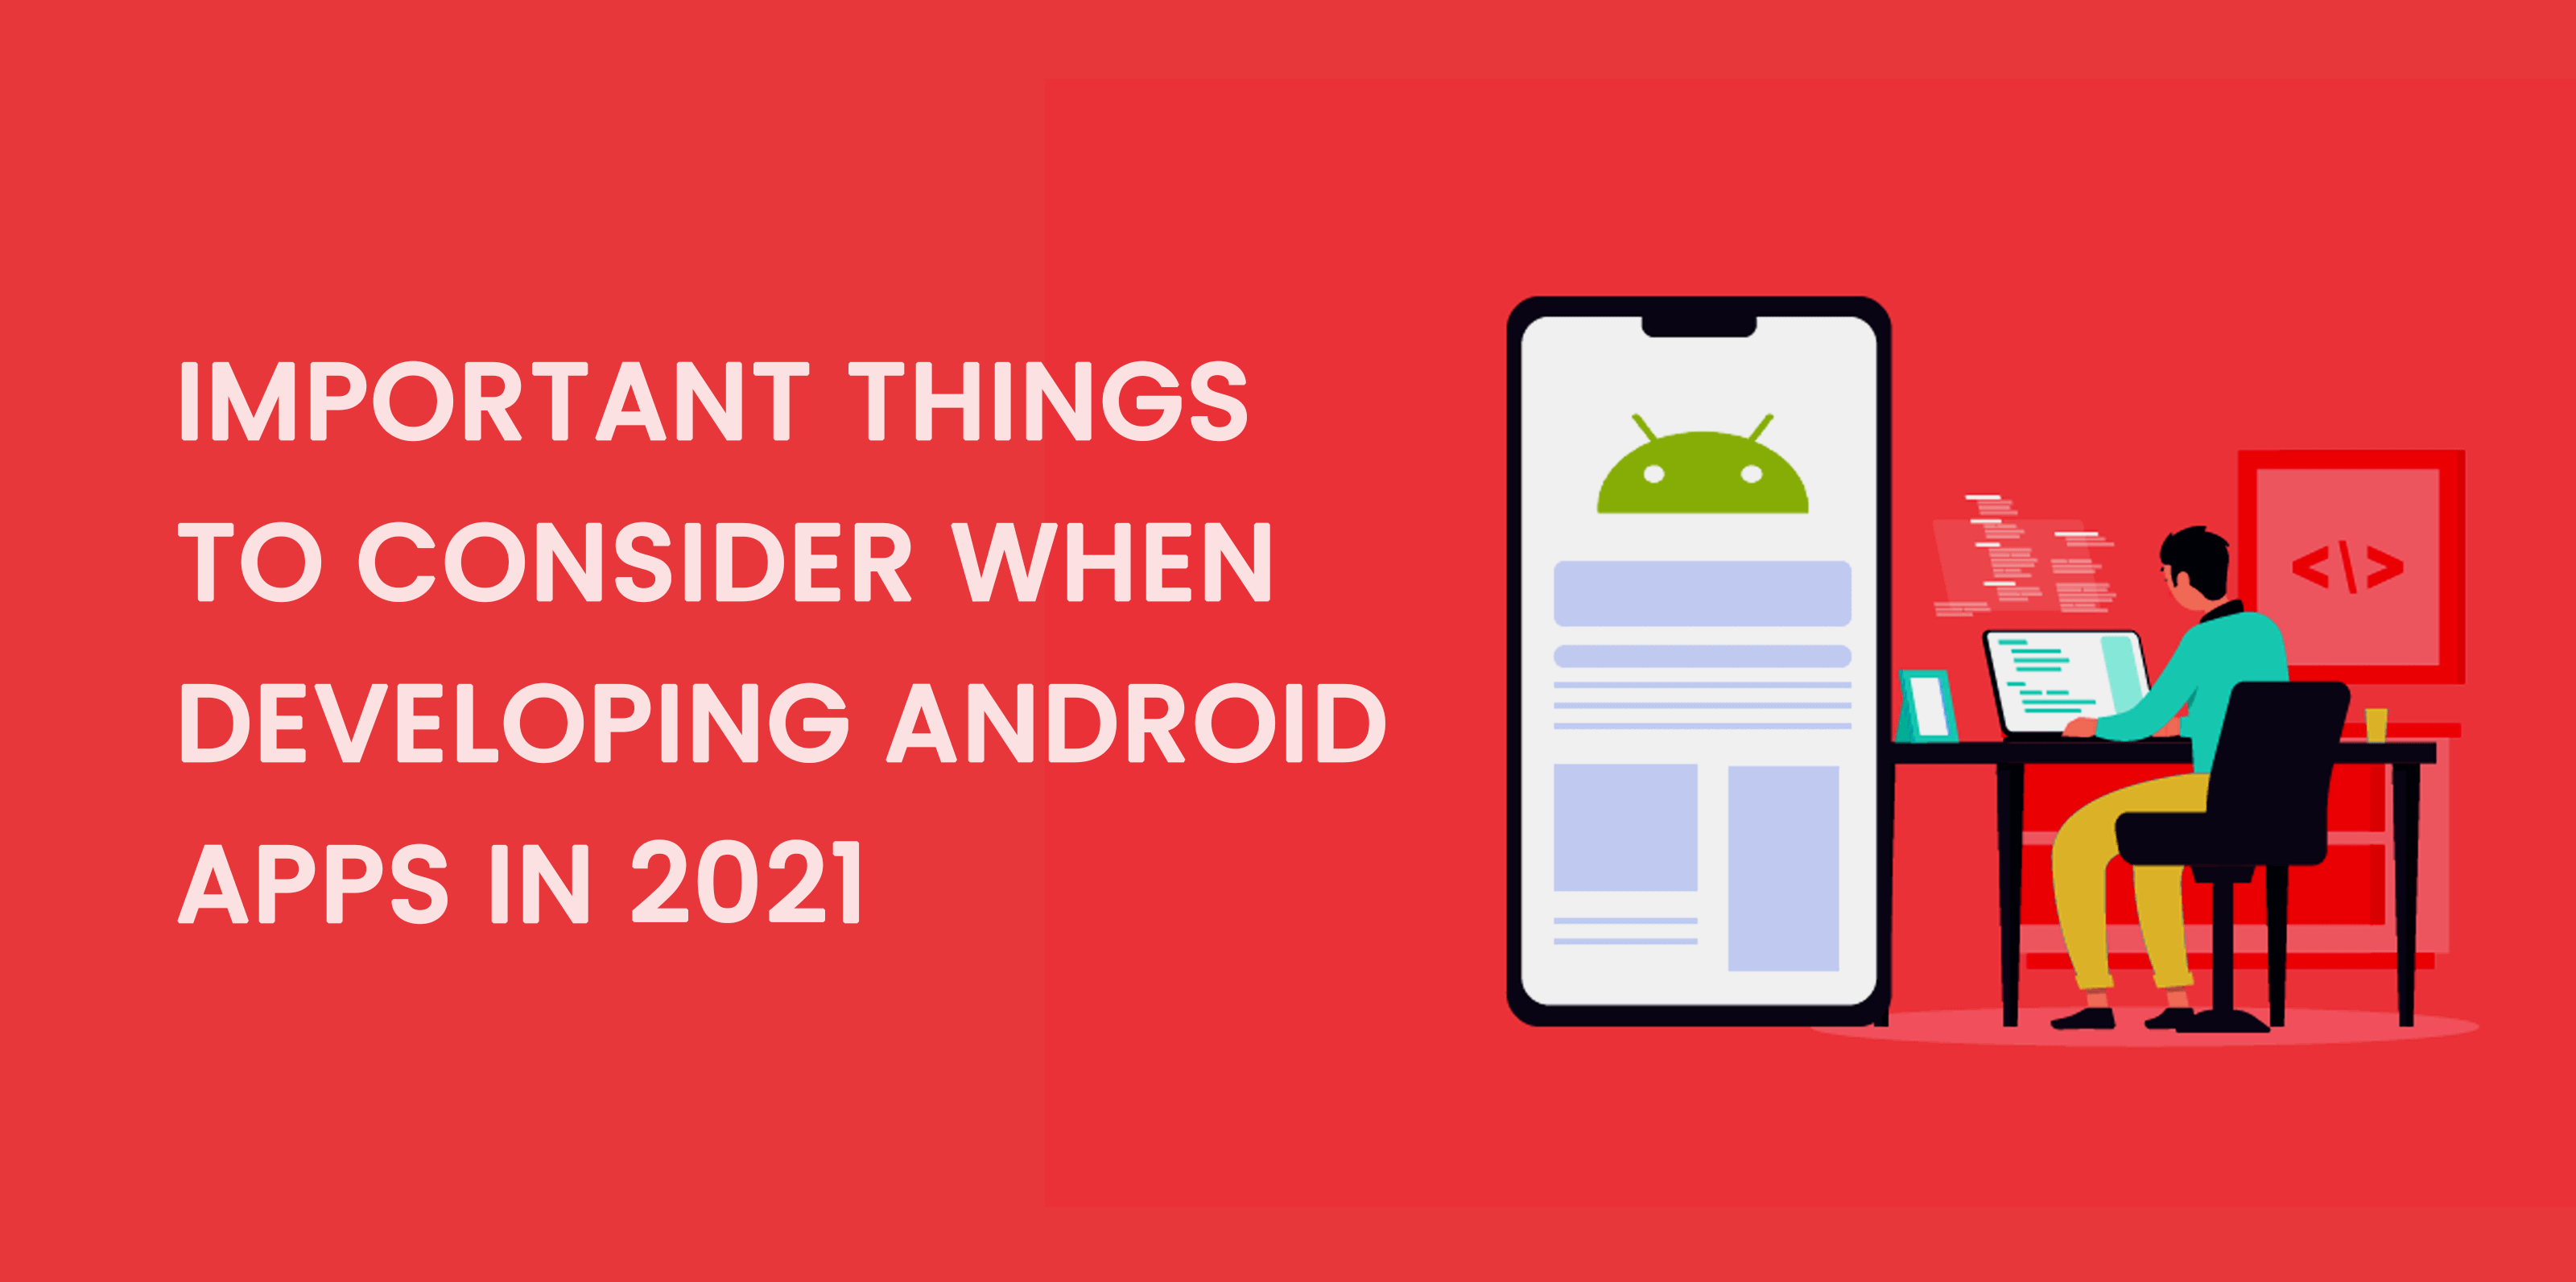 أشياء مهمة يجب مراعاتها عند تطوير تطبيقات Android في عام 2021